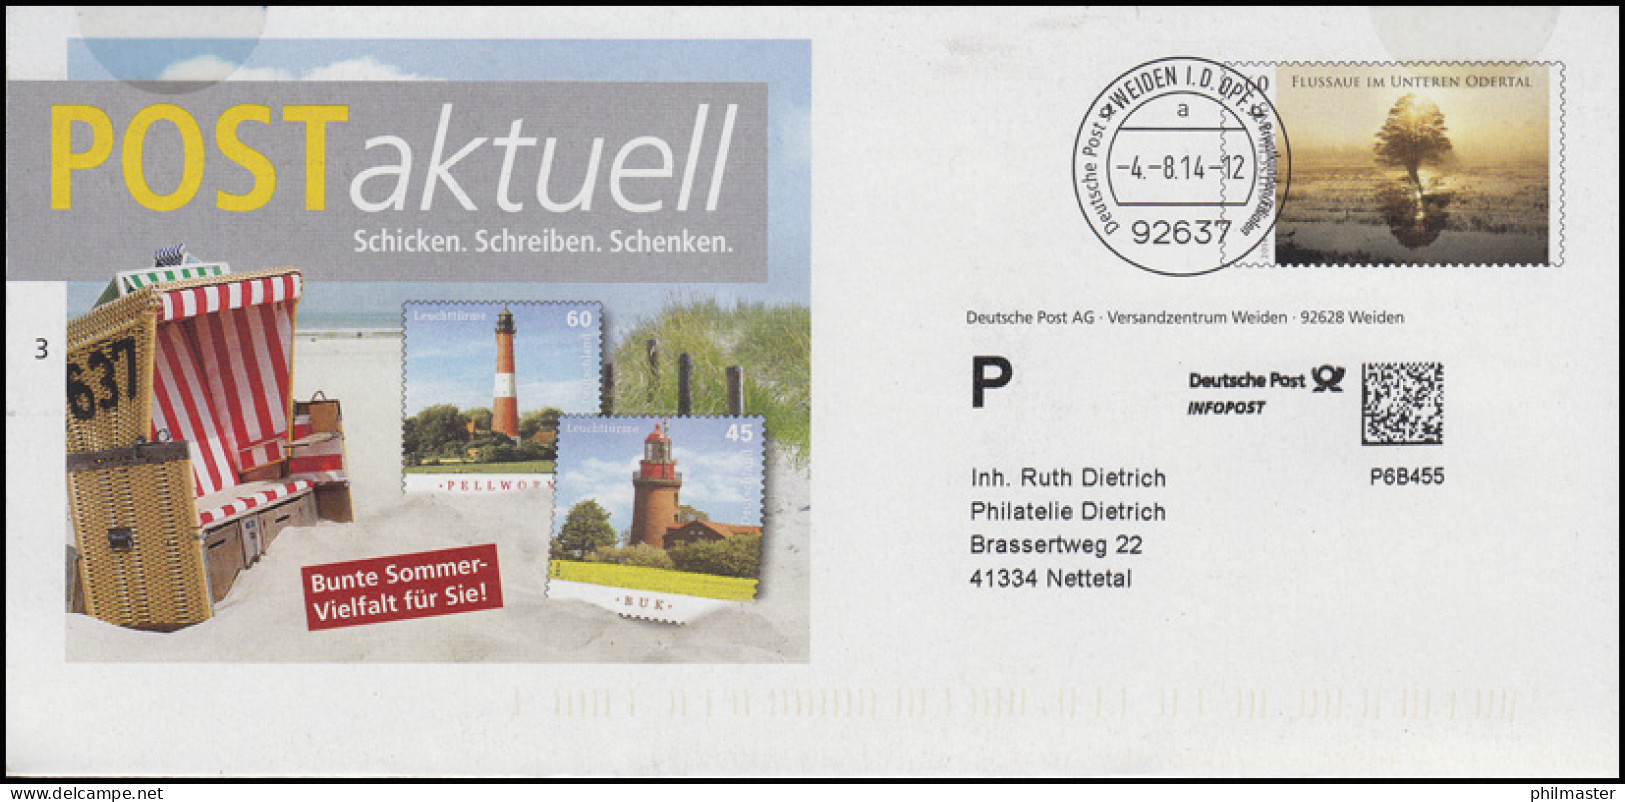 Plusbrief POSTaktuell Sommer-Vielfalt Leuchttürme & Strandkorb, Weiden 4.8.14 - Covers - Mint